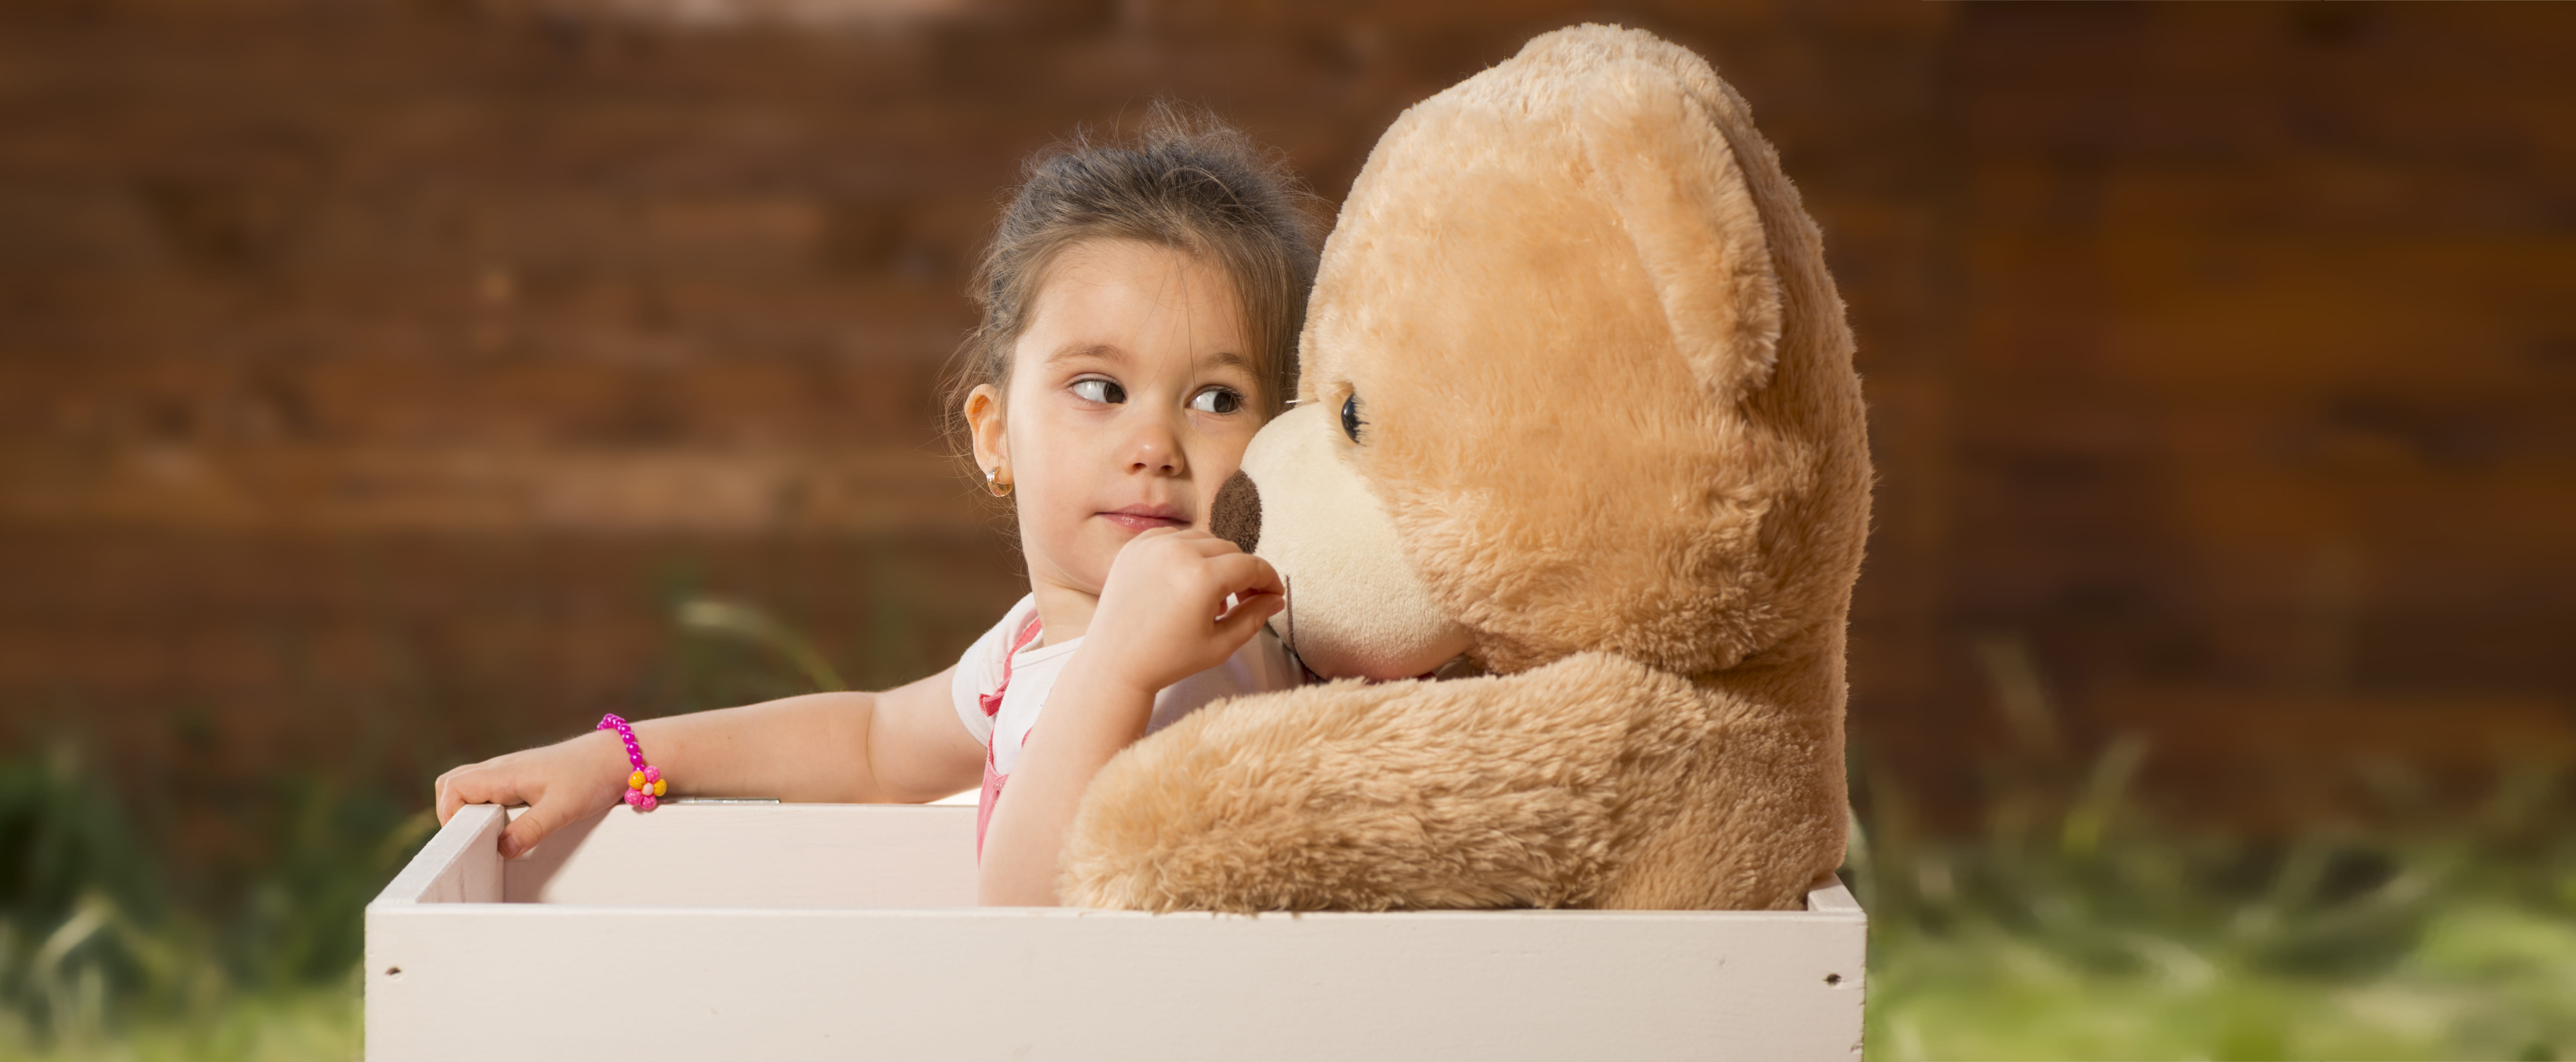 a little girl holding a teddy bear